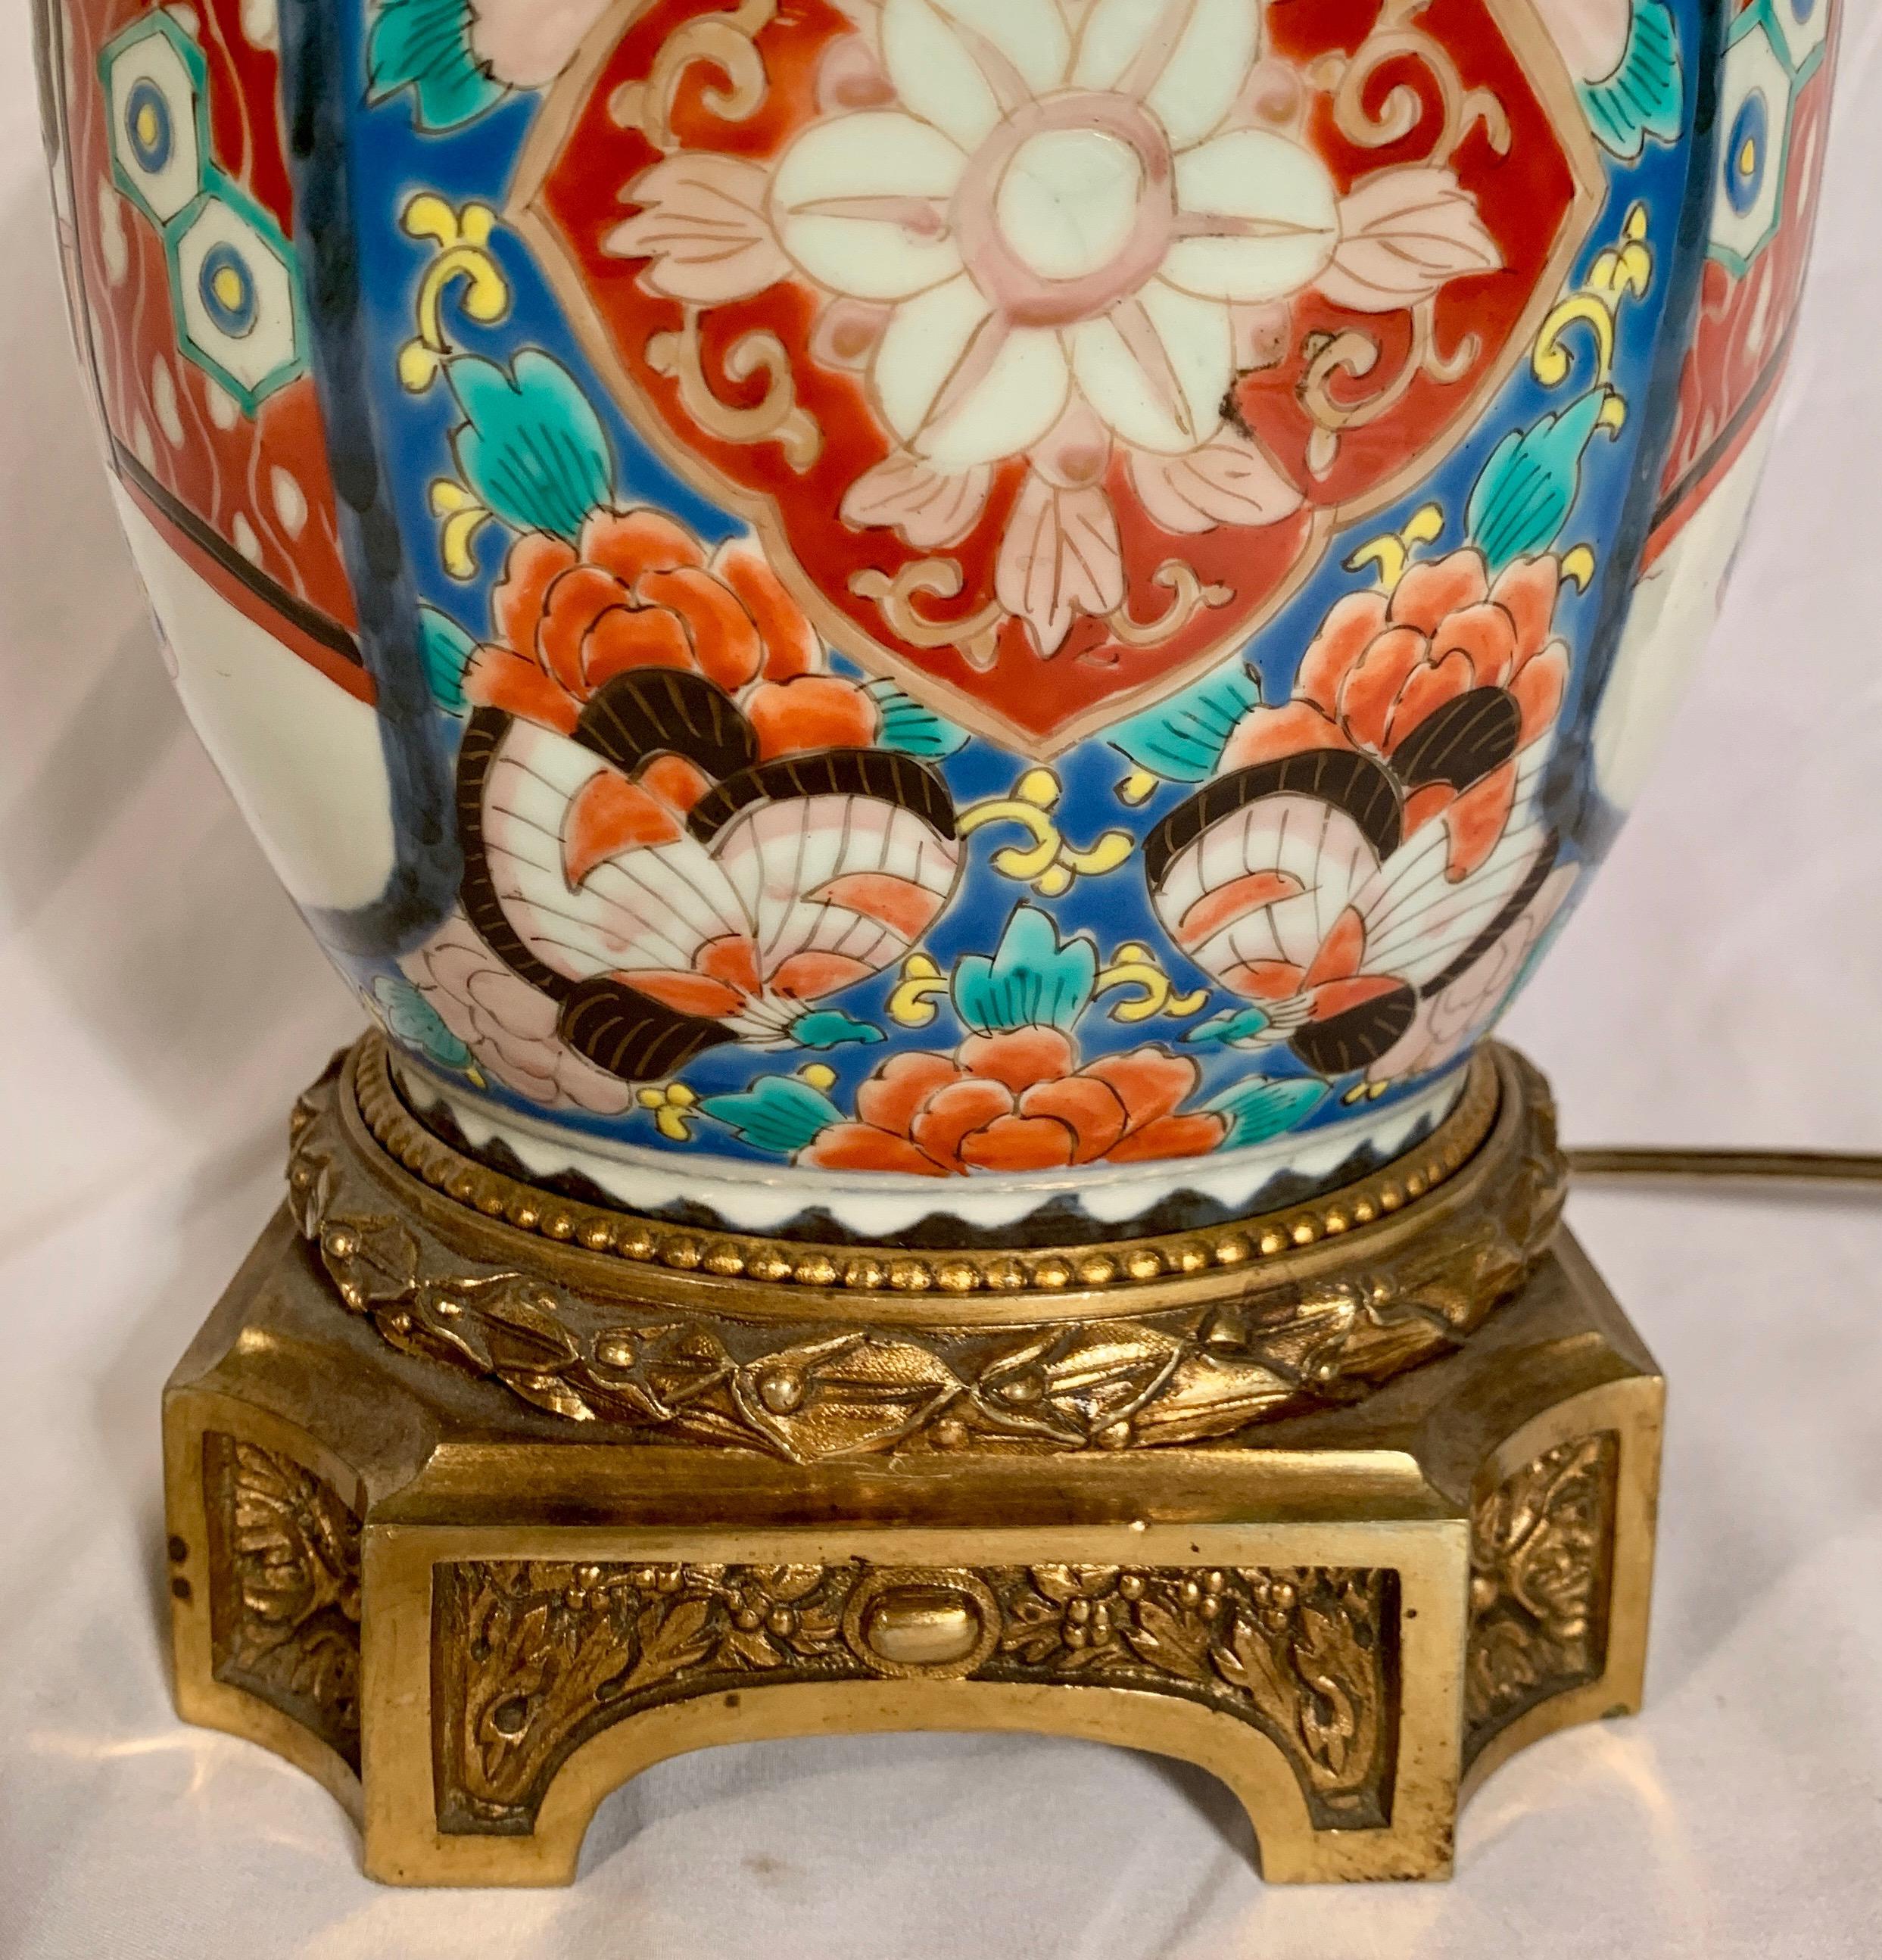 Cette jolie urne japonaise a été transformée en lampe. Les couleurs de l'urne en porcelaine restent fortes et le design est net. 
